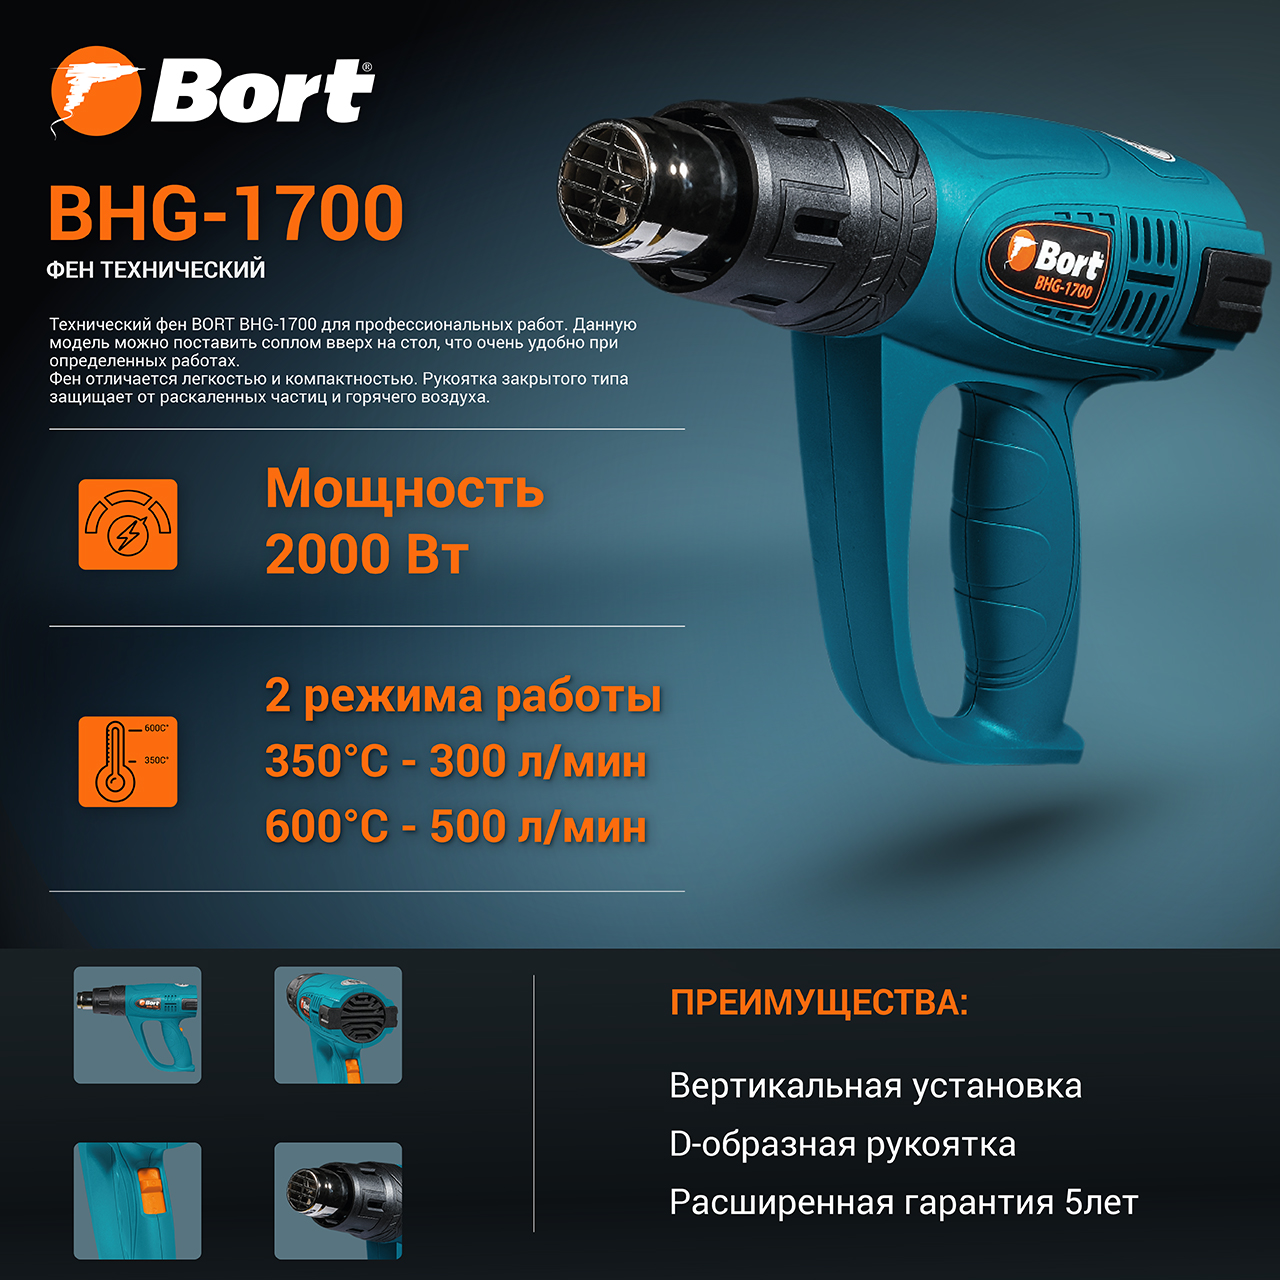 Фен технический BORT BHG-1700